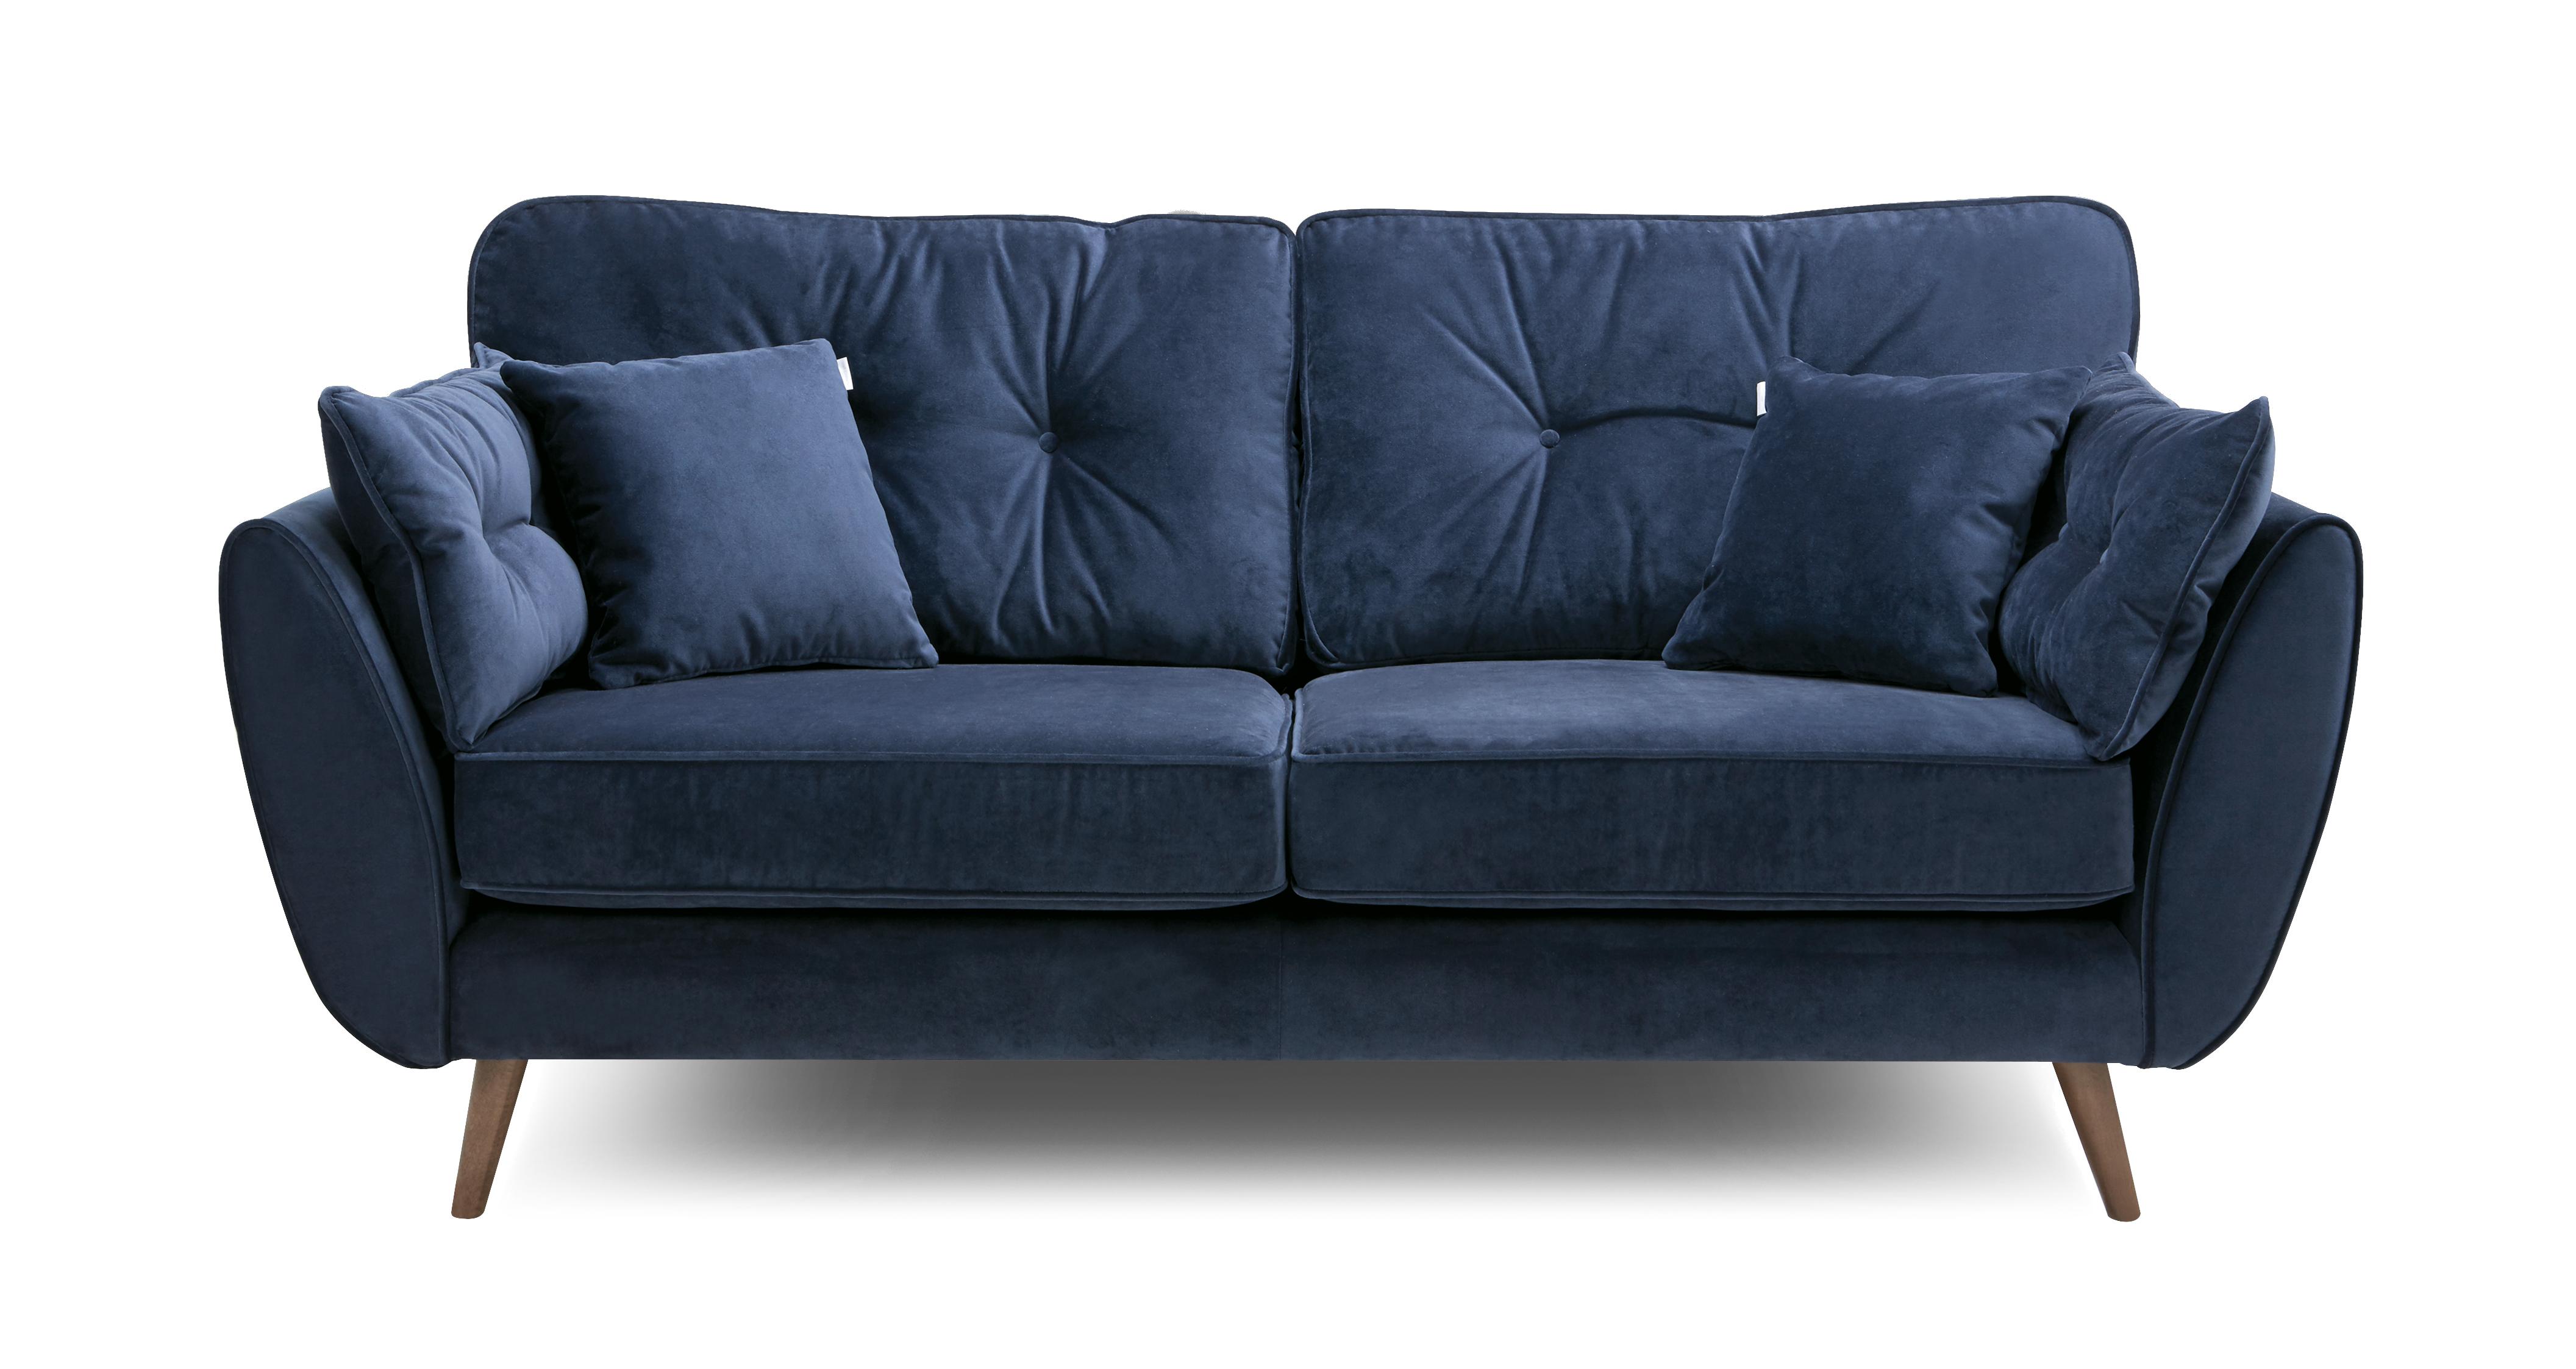 dfs zinc sofa bed